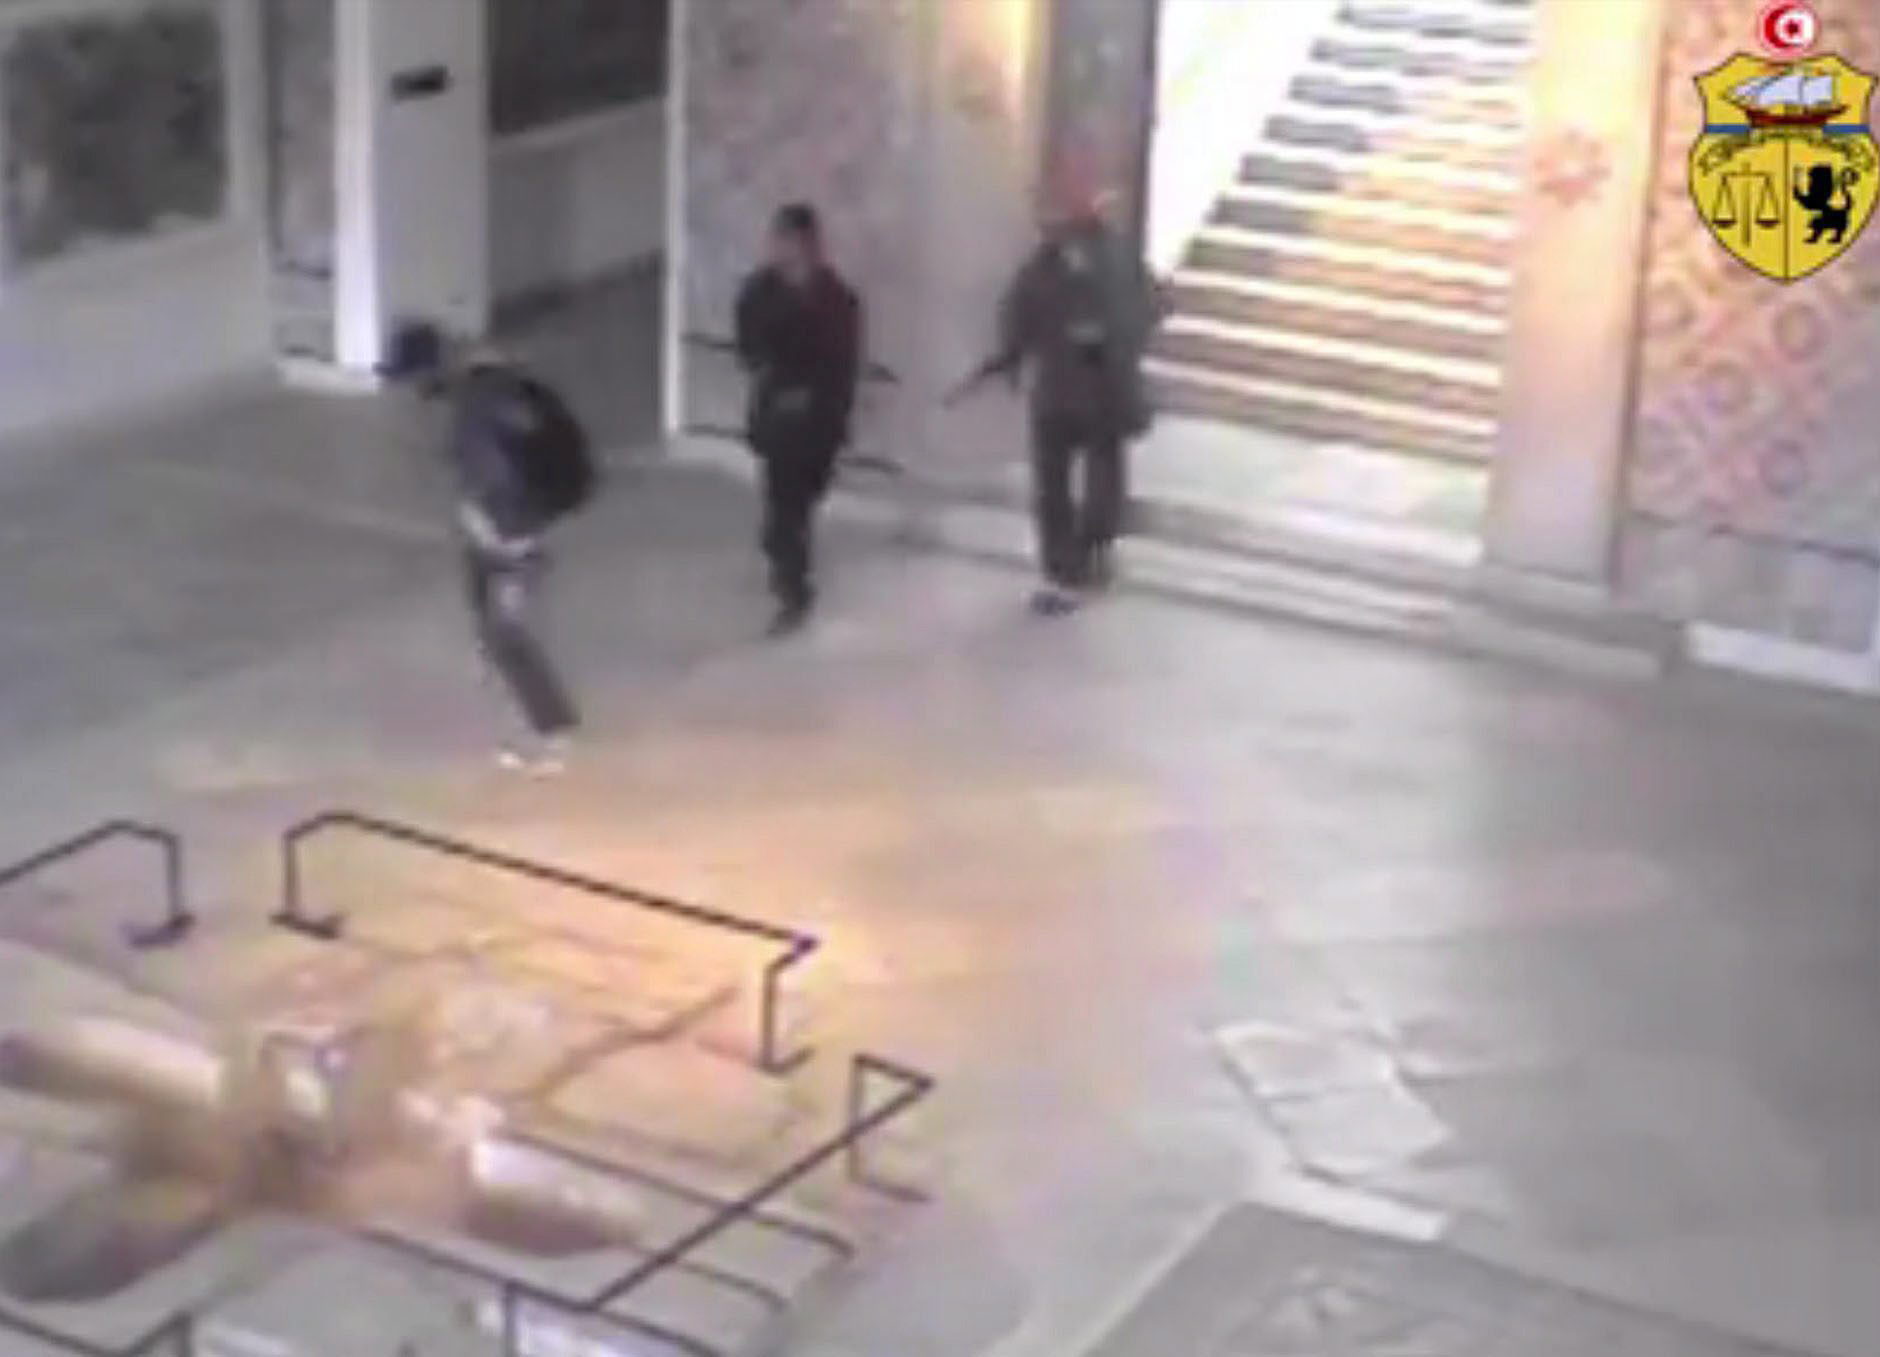 Los implicados fueron identificados y filmados por las cámaras de seguridad del museo.